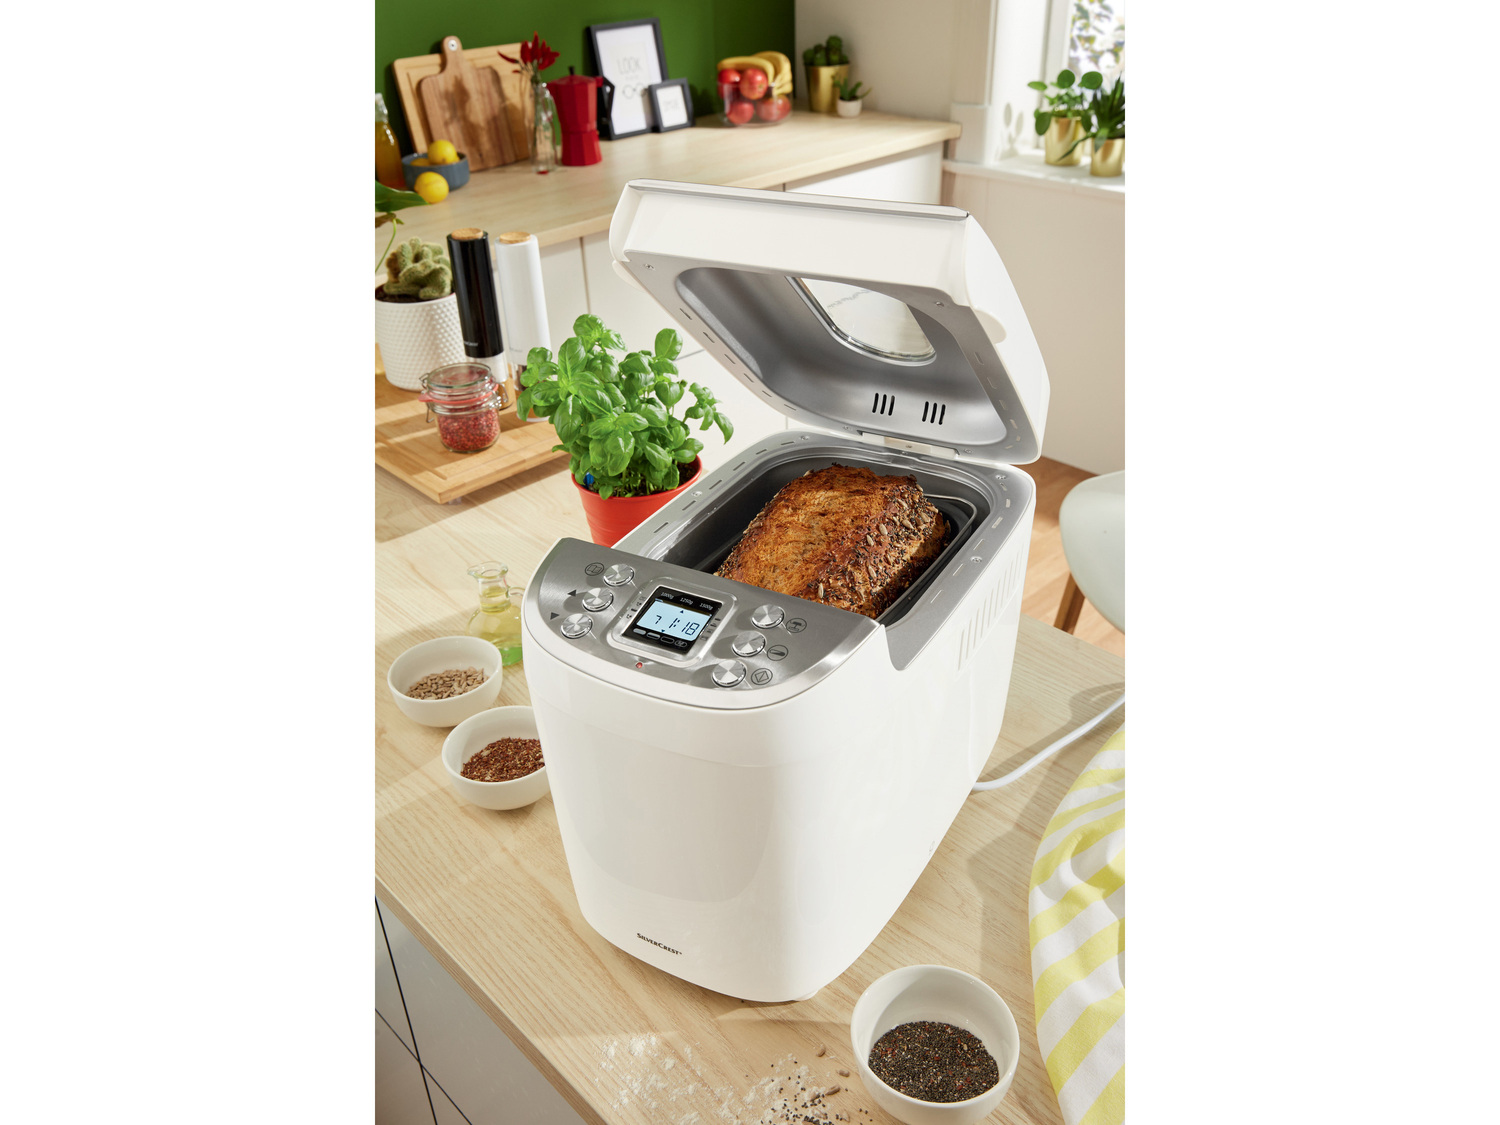 Automat do pieczenia chleba 850 W Silverscrest Kitchen Tools, cena 139,00 PLN 
- ...